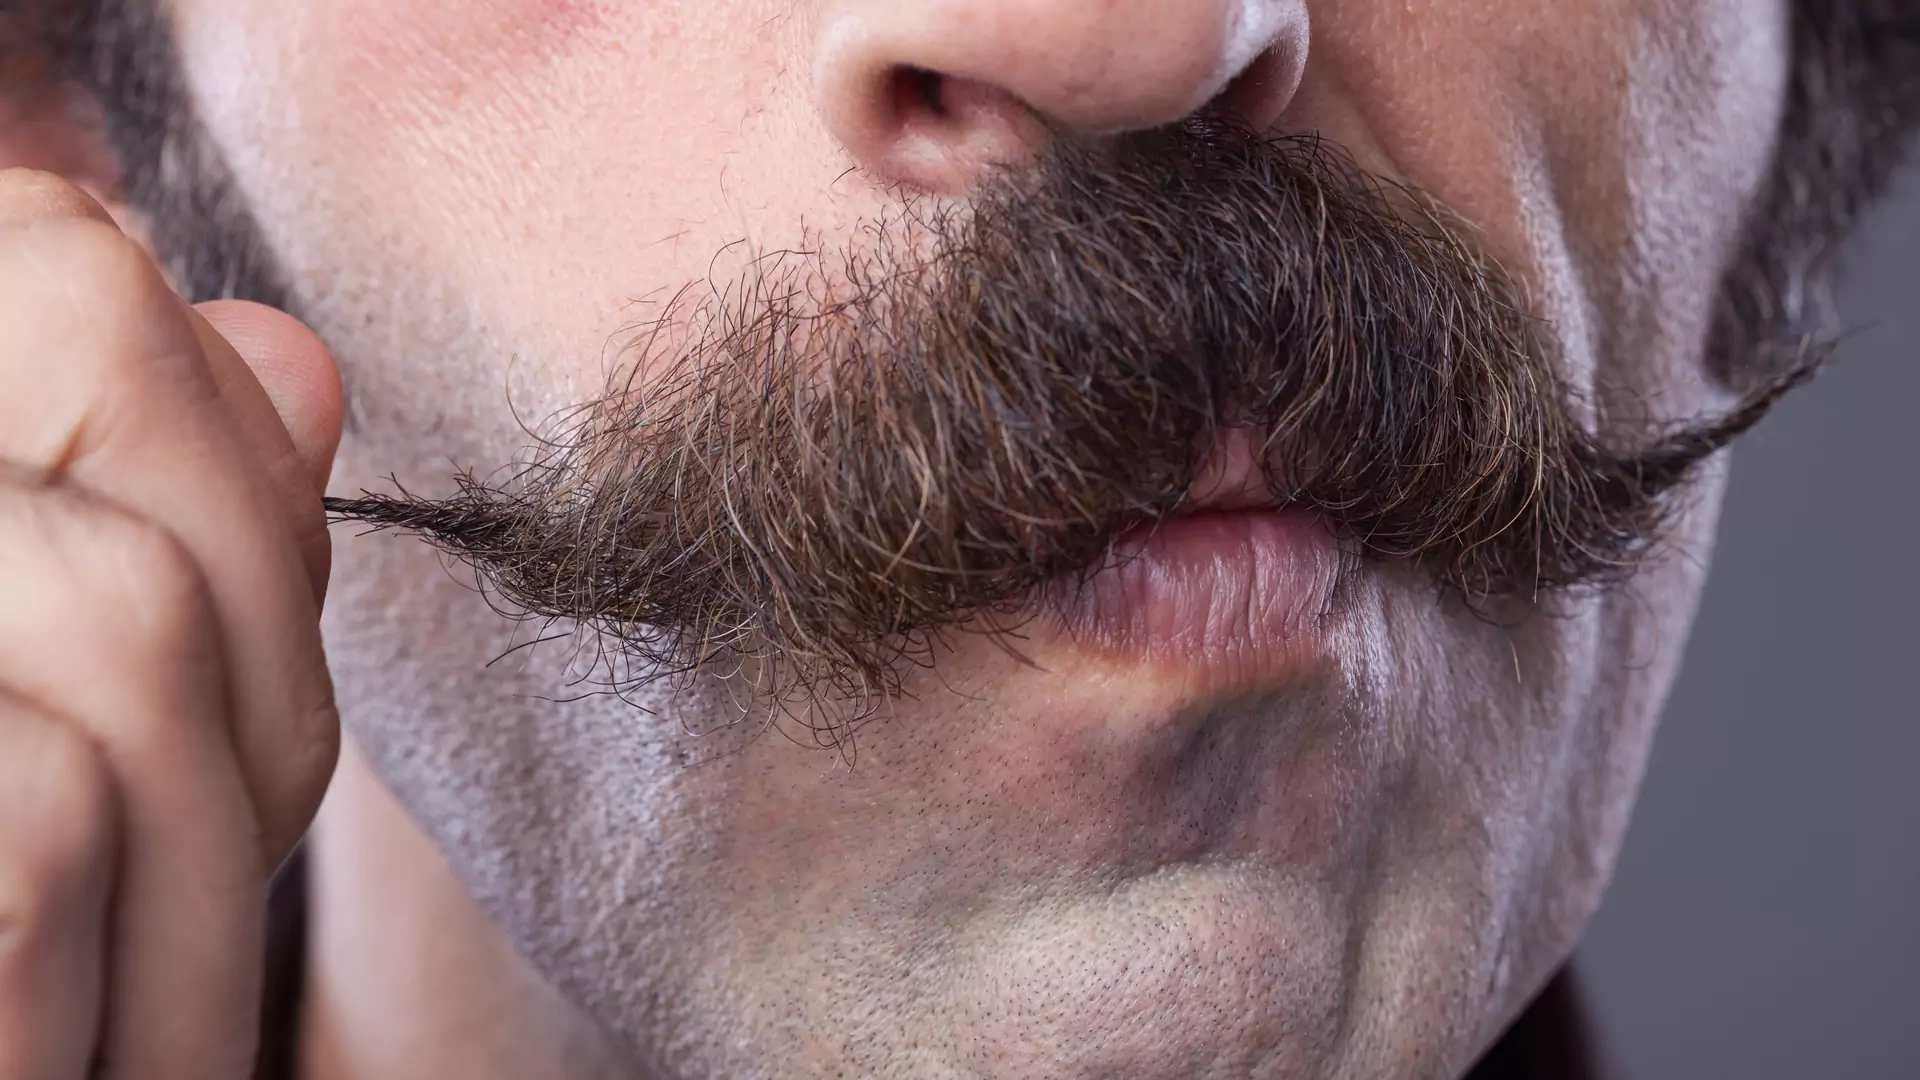 Co oznacza "Movember"? Ważną rolę odgrywają wąsy